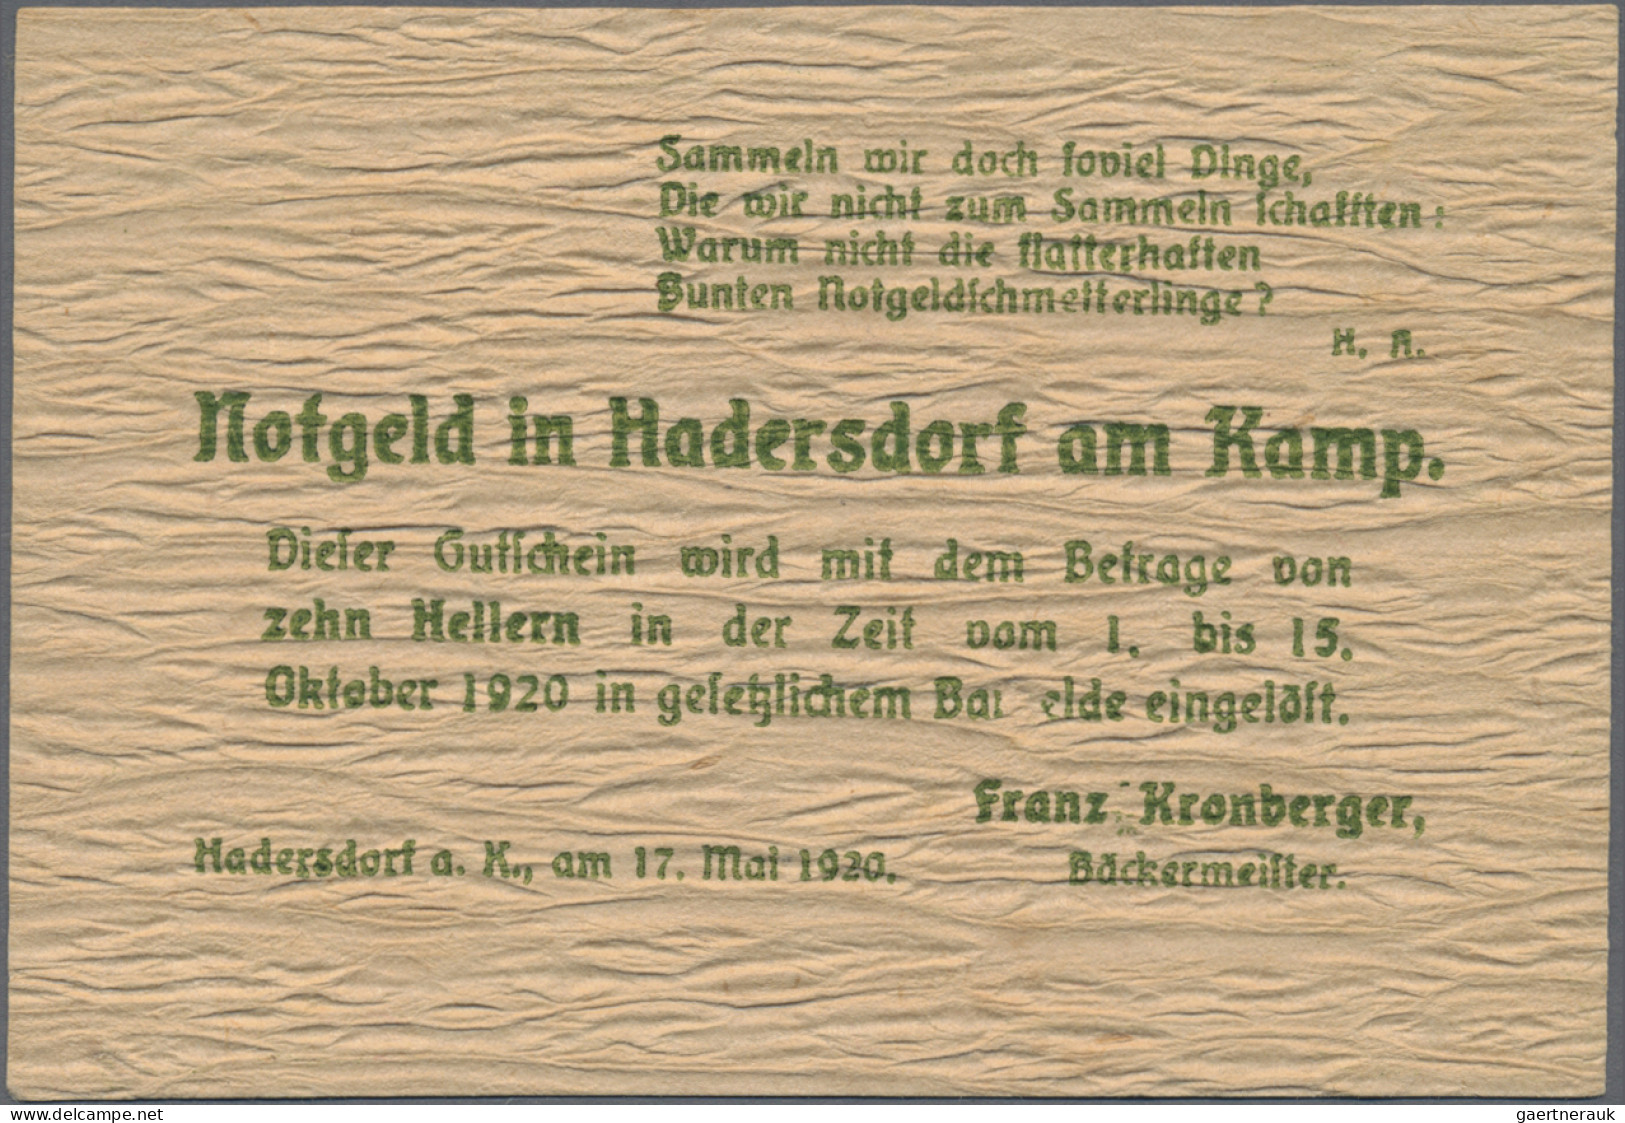 Austria: Hadersdorf Am Kamp, Franz Kronberger, 10, 20, 50 H., 17.5.1920, 10 H. W - Austria